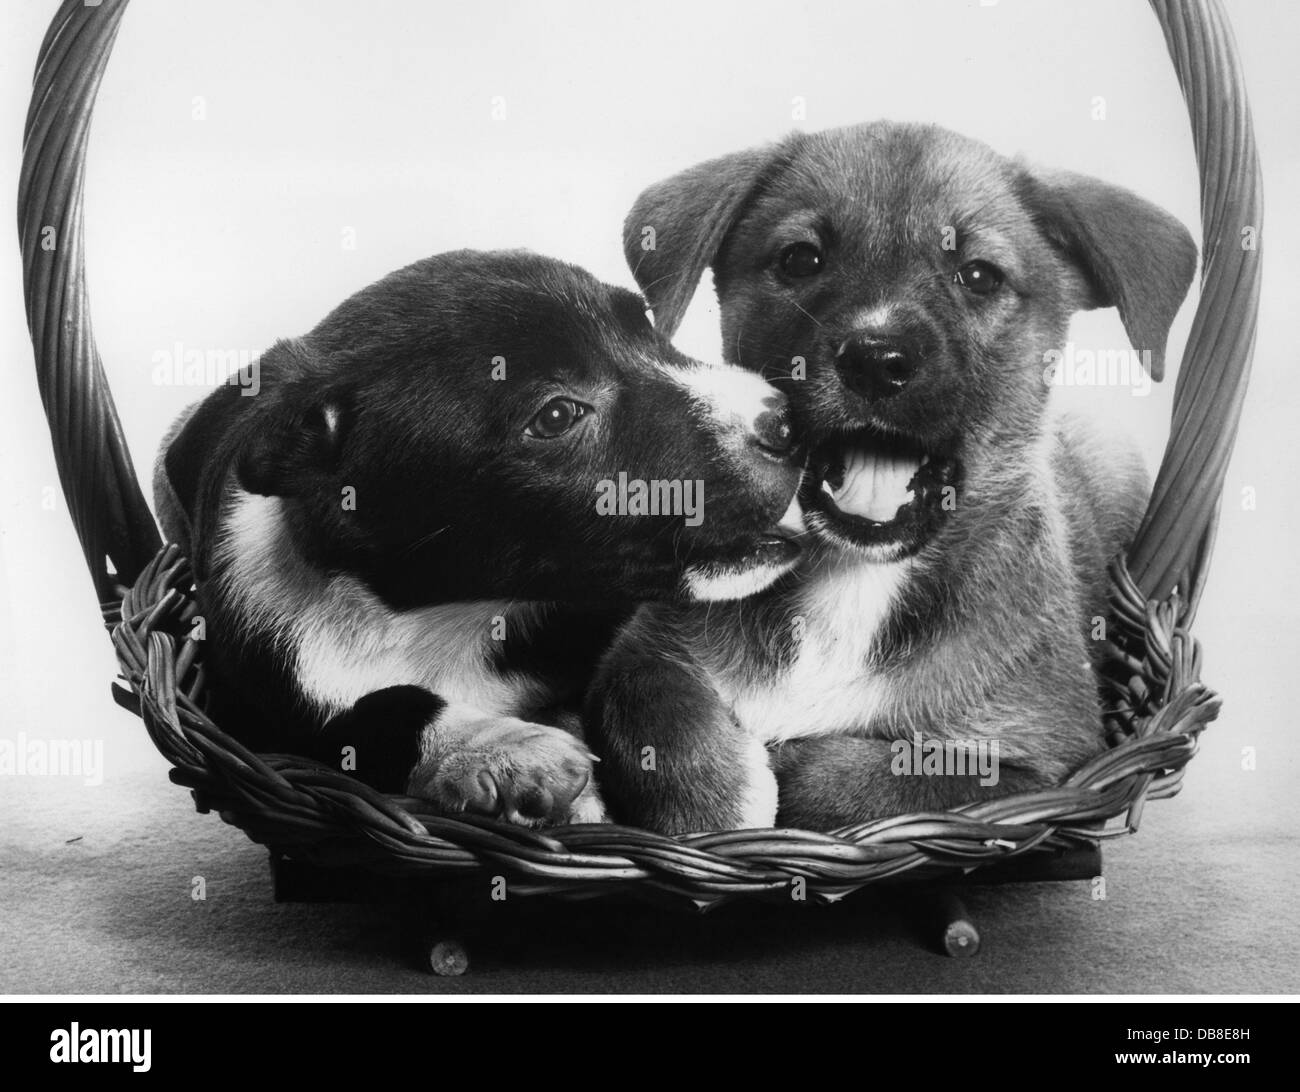 zoologie / animaux, mammifères / mammifères, chien (Canis lupus familiaris), deux chiots, années 1950, droits additionnels-Clearences-non disponible Banque D'Images